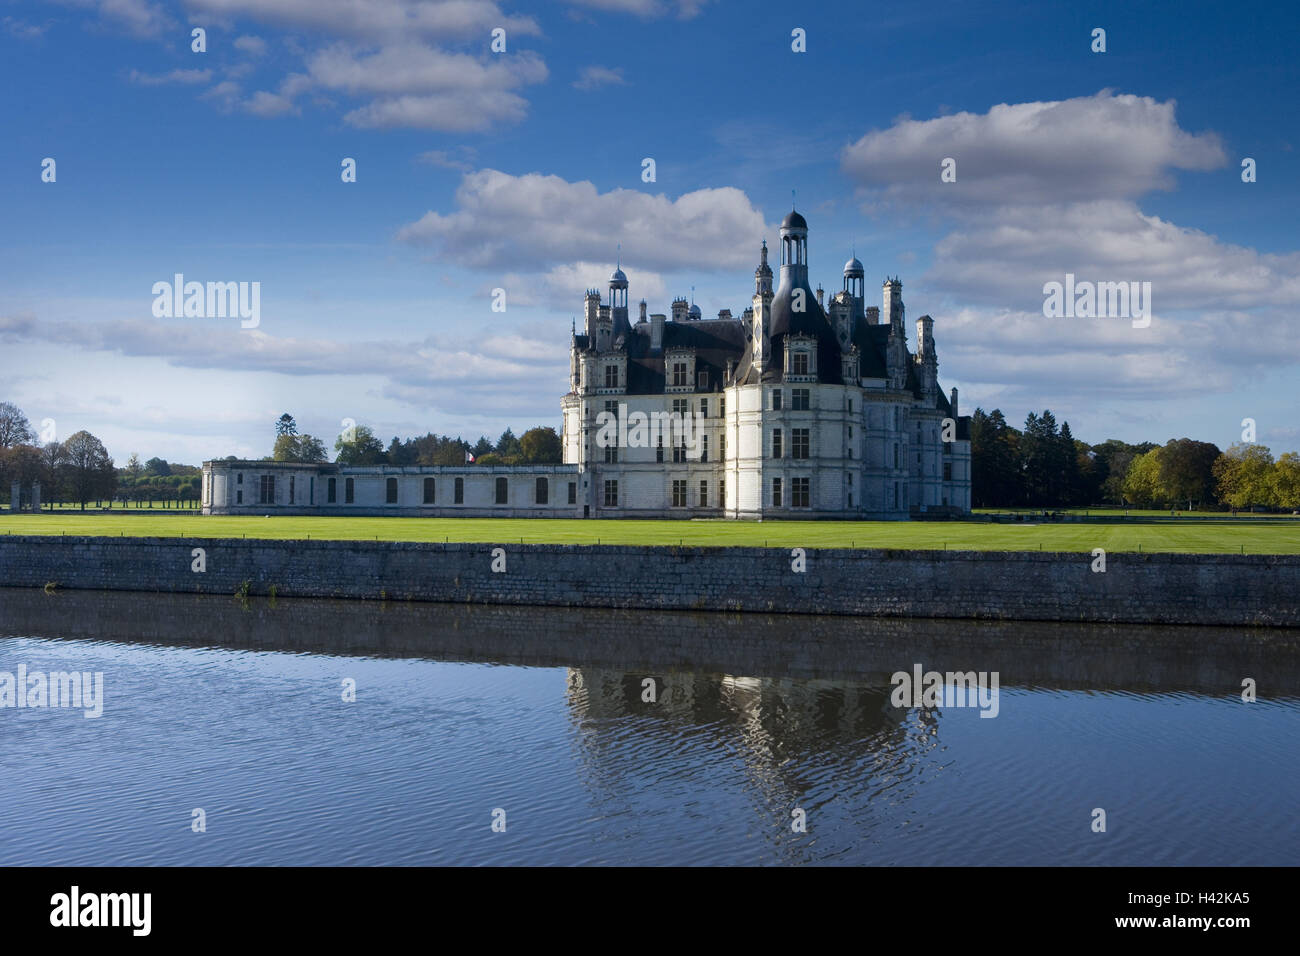 France, Centre, Loir-et-Cher, river Loire, castle Chambord, water jump, Stock Photo